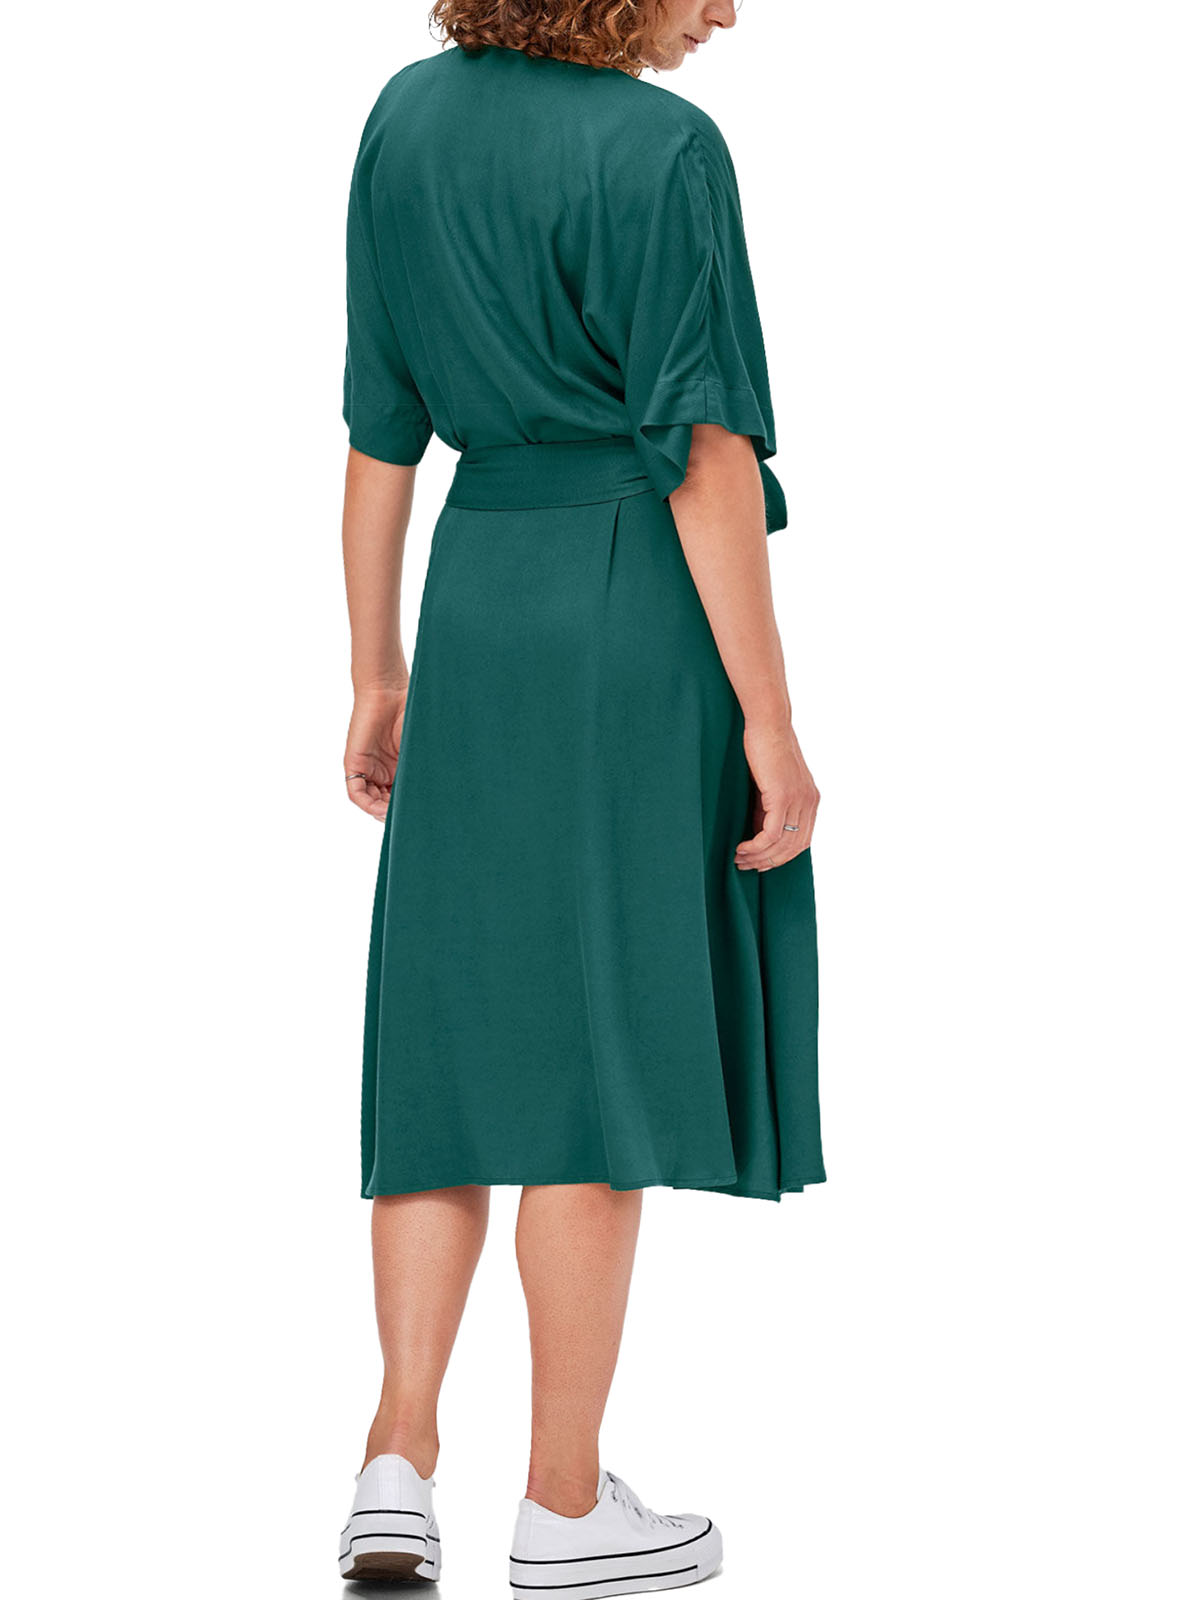 Ellos - - DARK-GREEN Button Through Belted Dress - Plus Size 14 to 28 ...